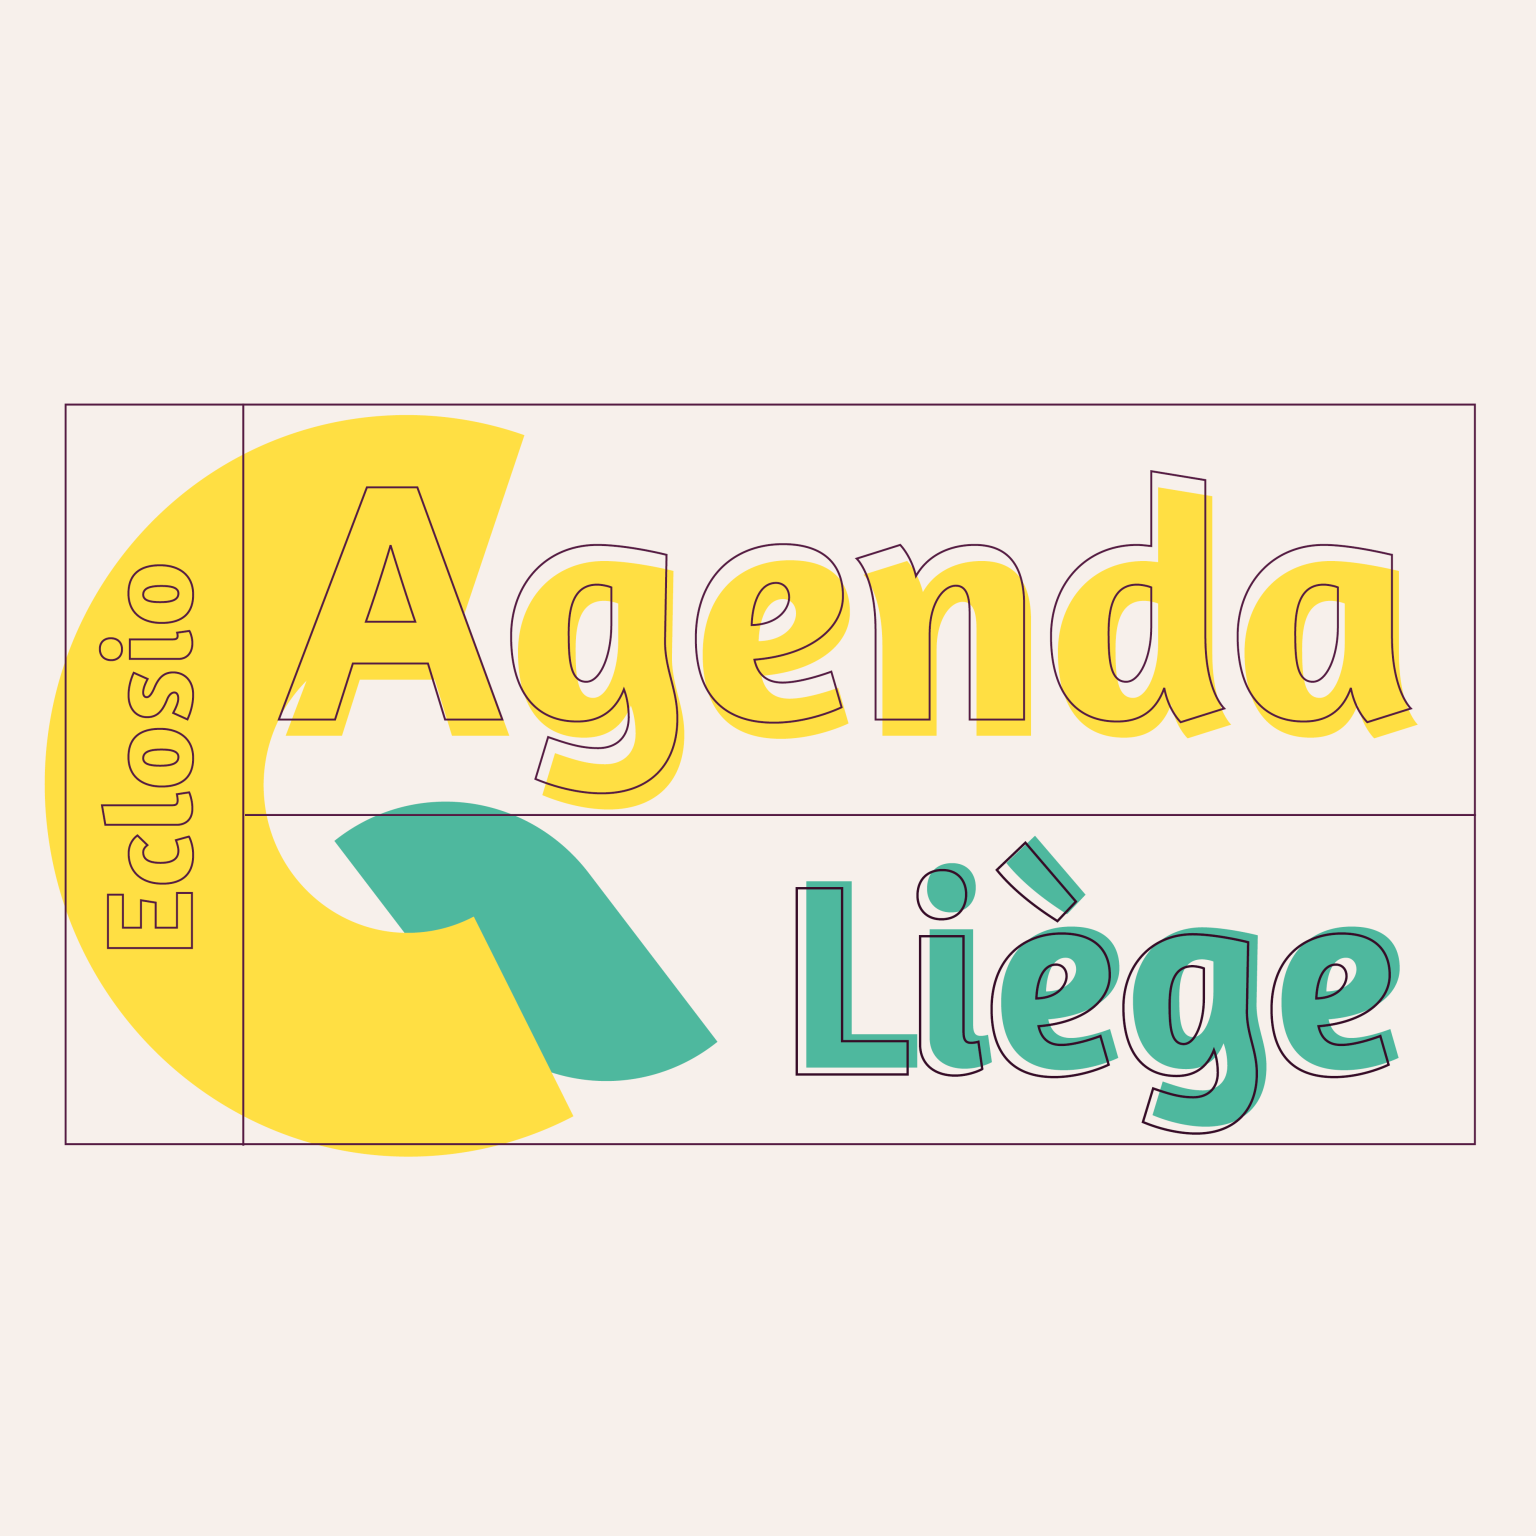 Bannière agenda engagé Eclosio Liège